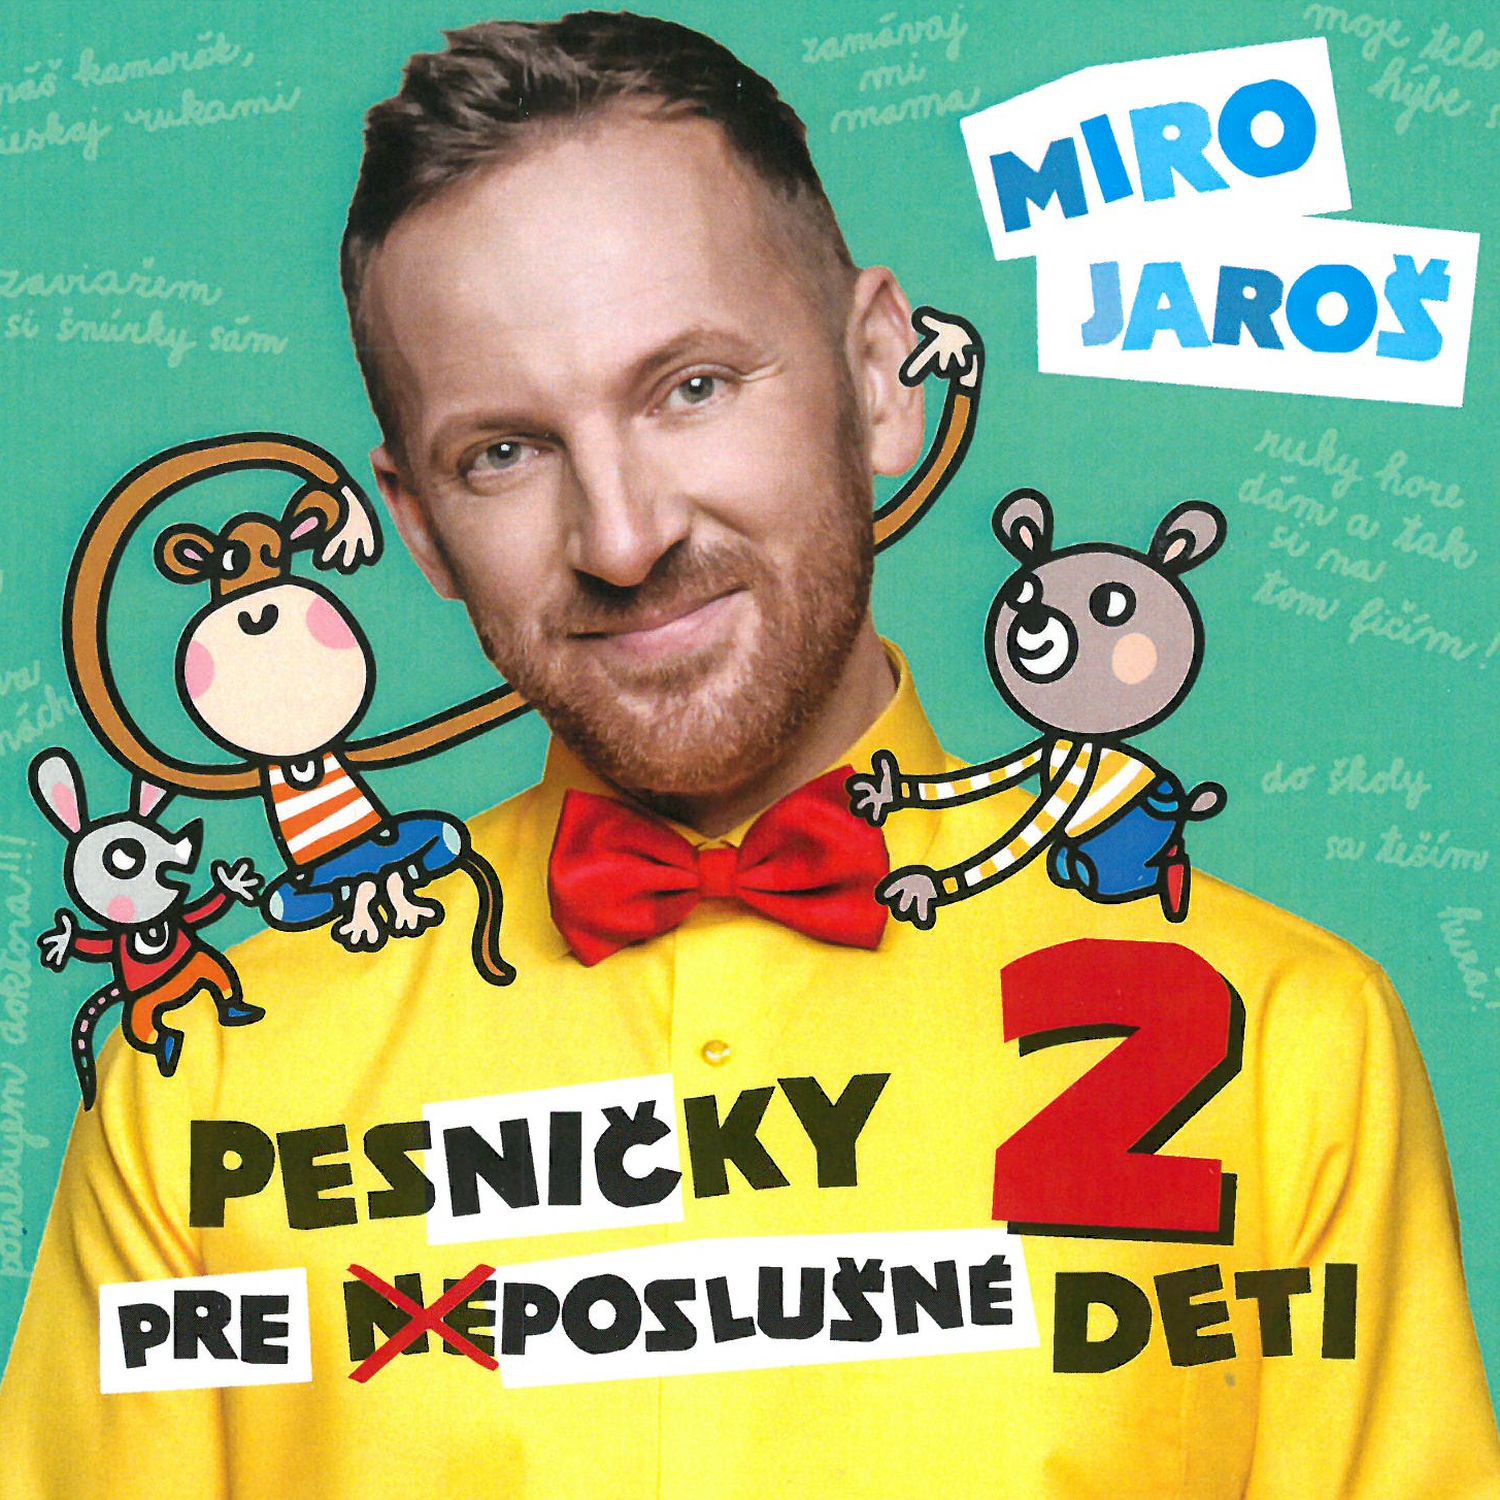 CD Shop - JAROS MIRO PESNICKY PRE (NE)POSLUSNE DETI 2